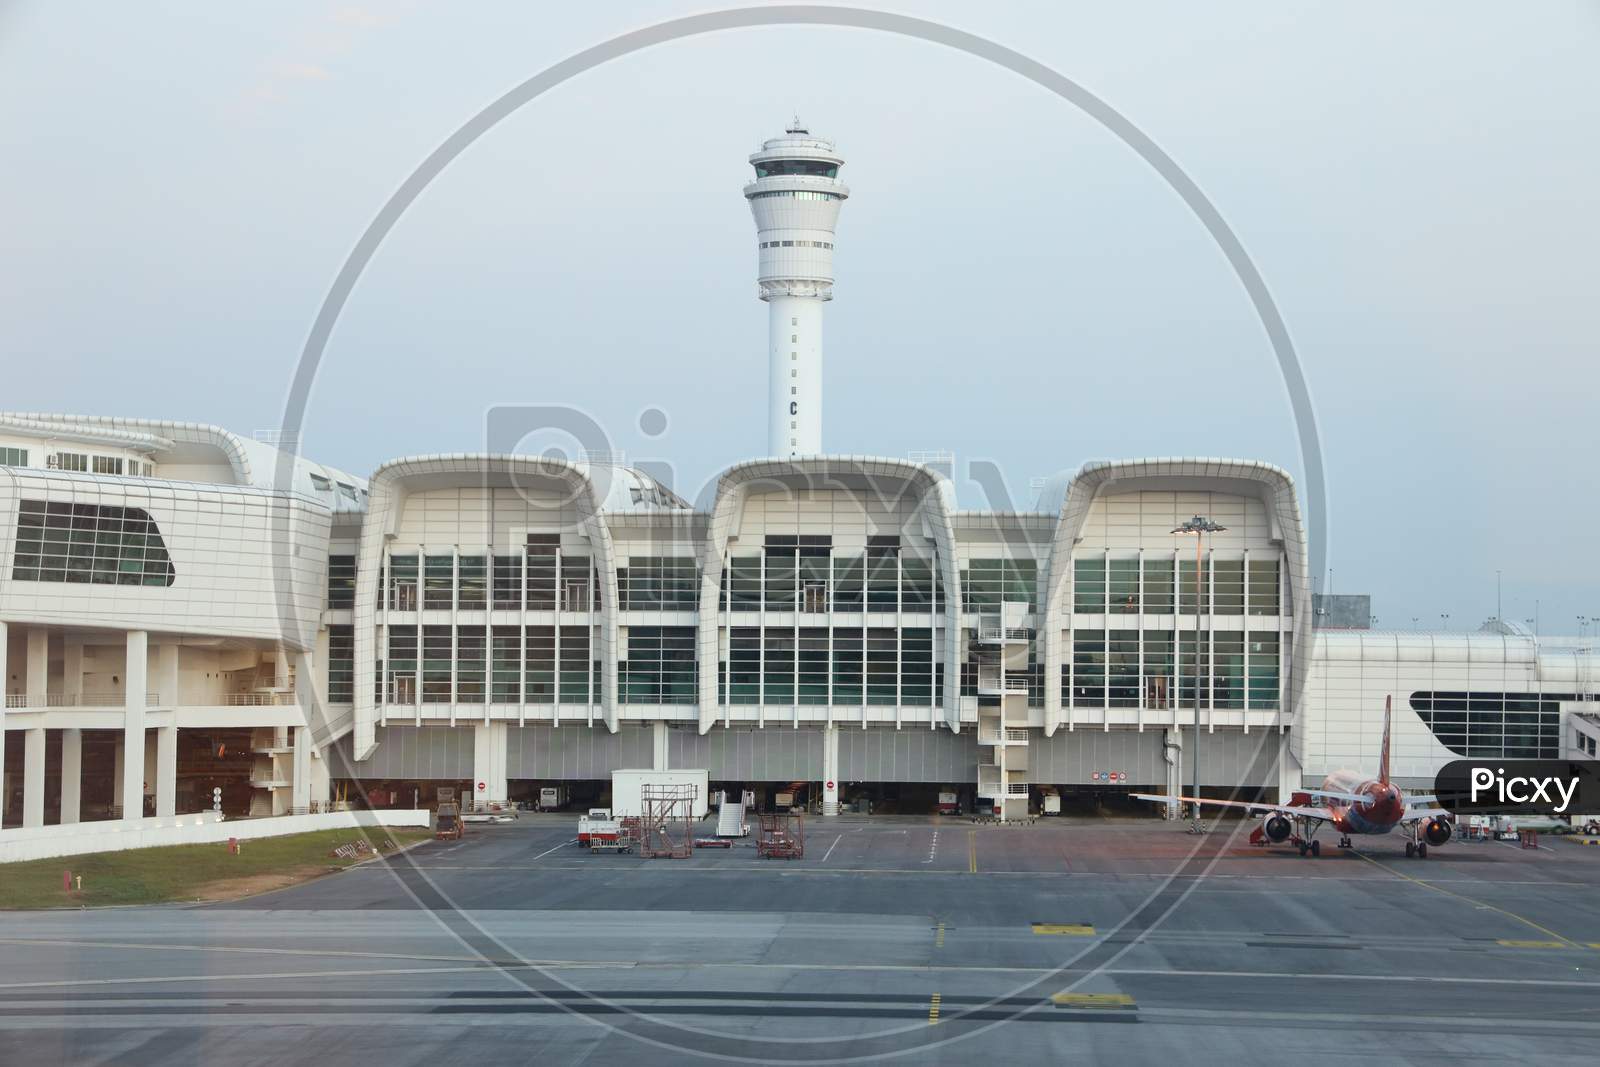 ATC Tower At KL International Airport , Malaysia